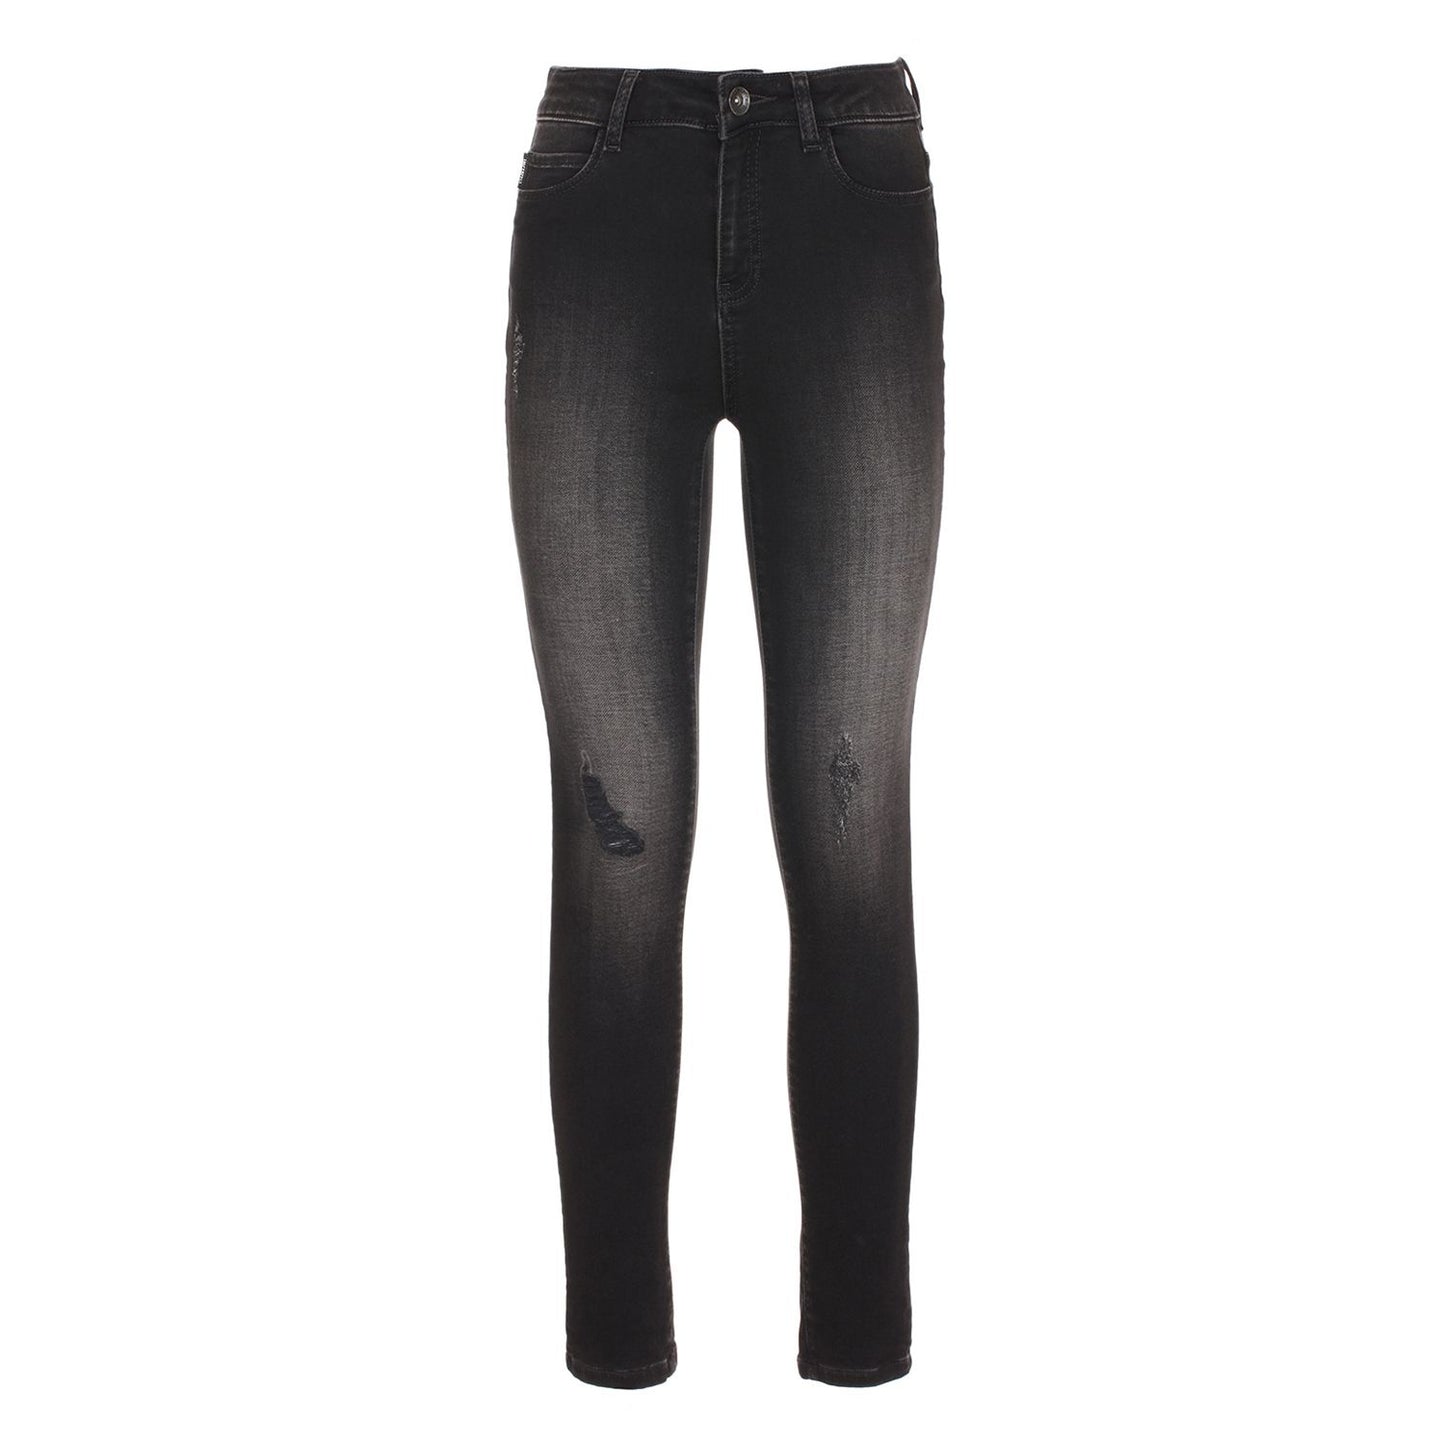 Imperfect Black Cotton Jeans & Pant